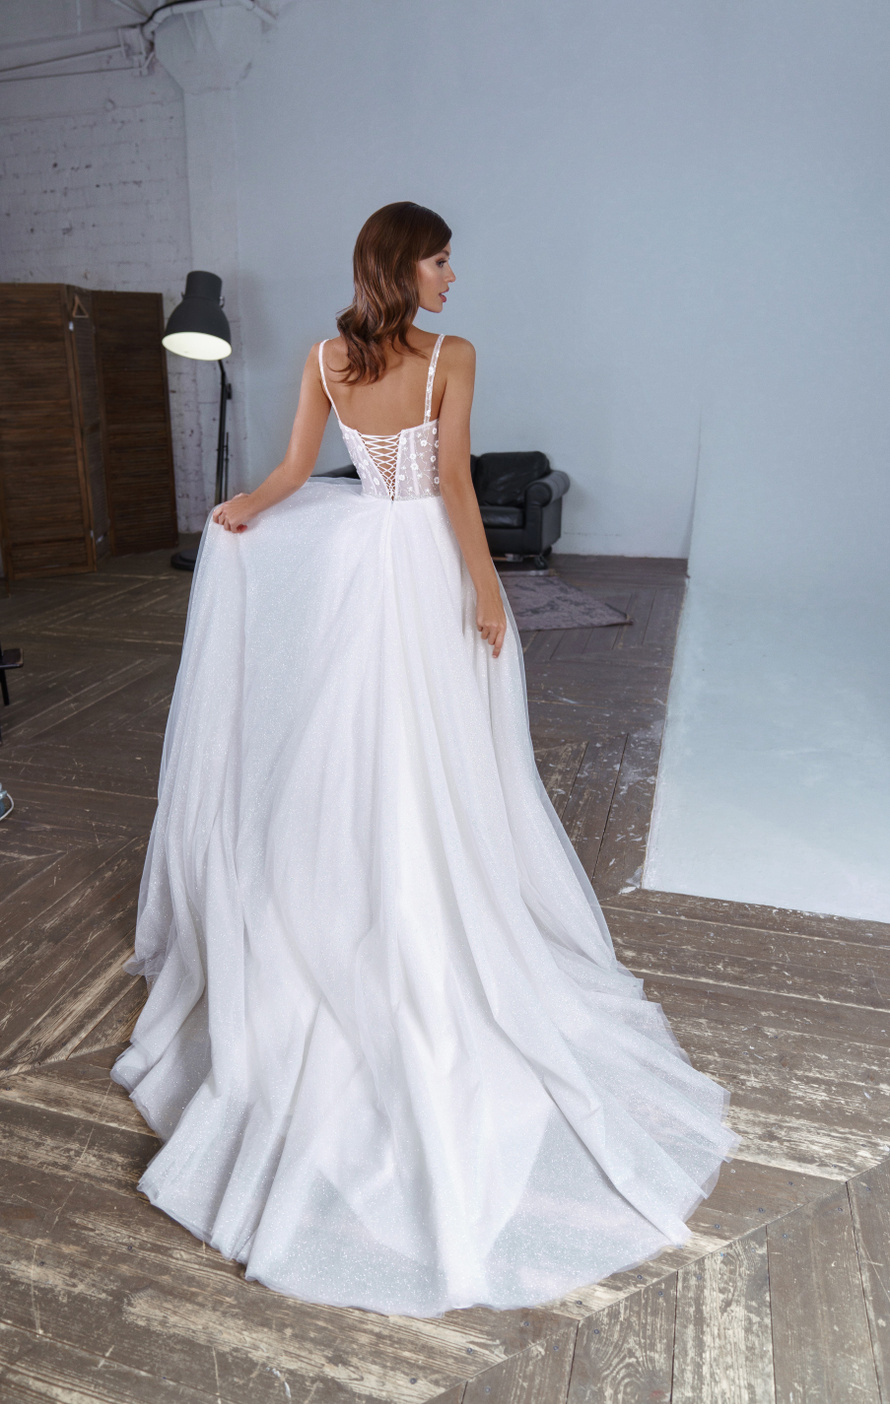 Купить свадебное платье «Флавия» Патрисия из коллекции 2020 года в Екатеринбурге